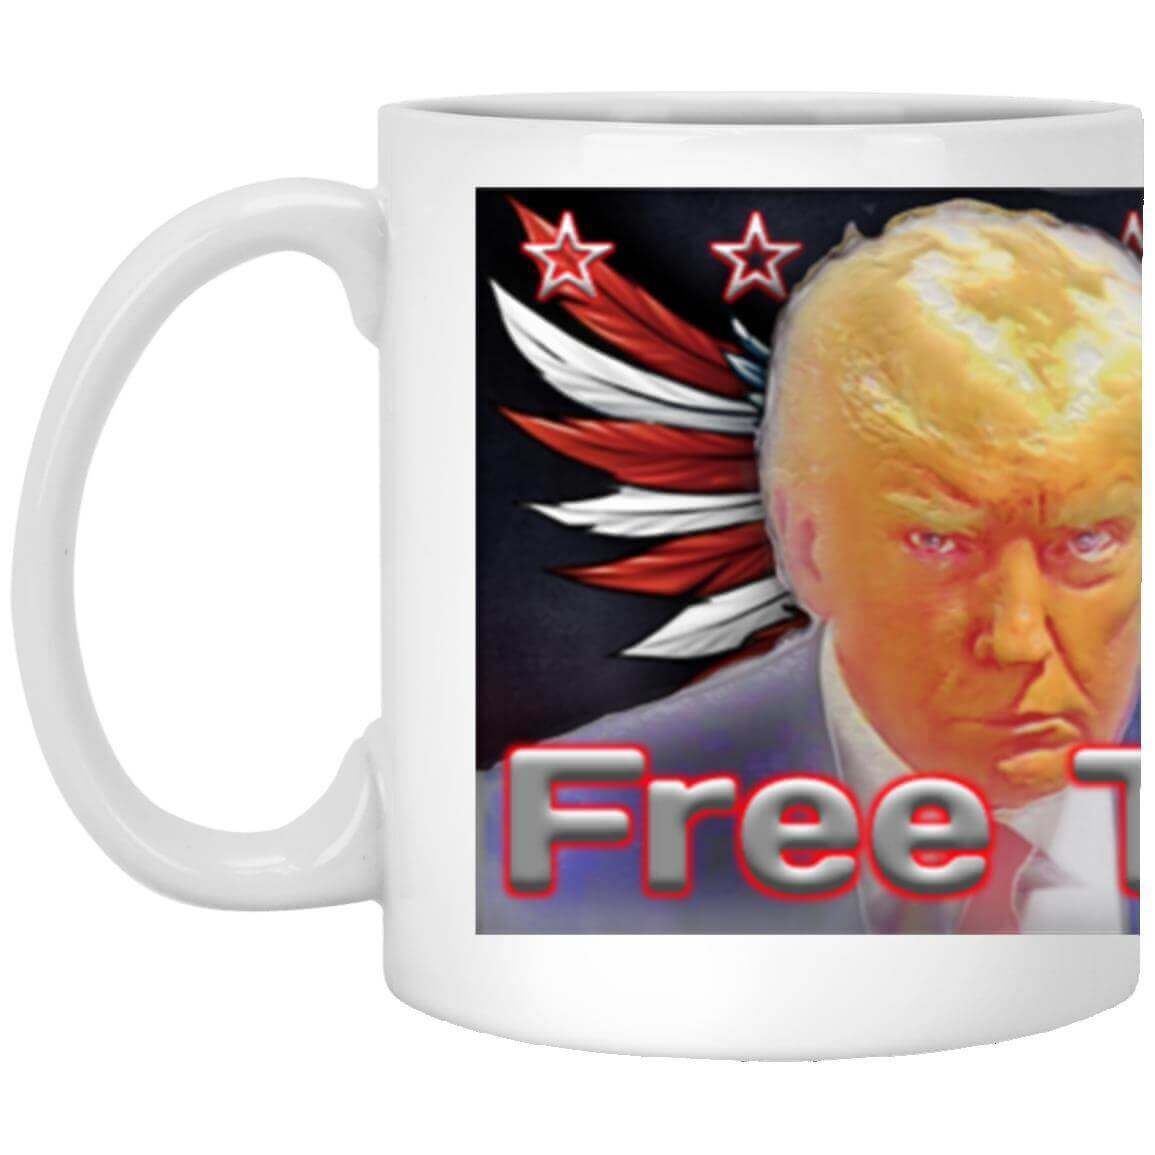 Official MAGA Trump VIP Shop gift mug with Mugshot image and Blue Jean King theme.